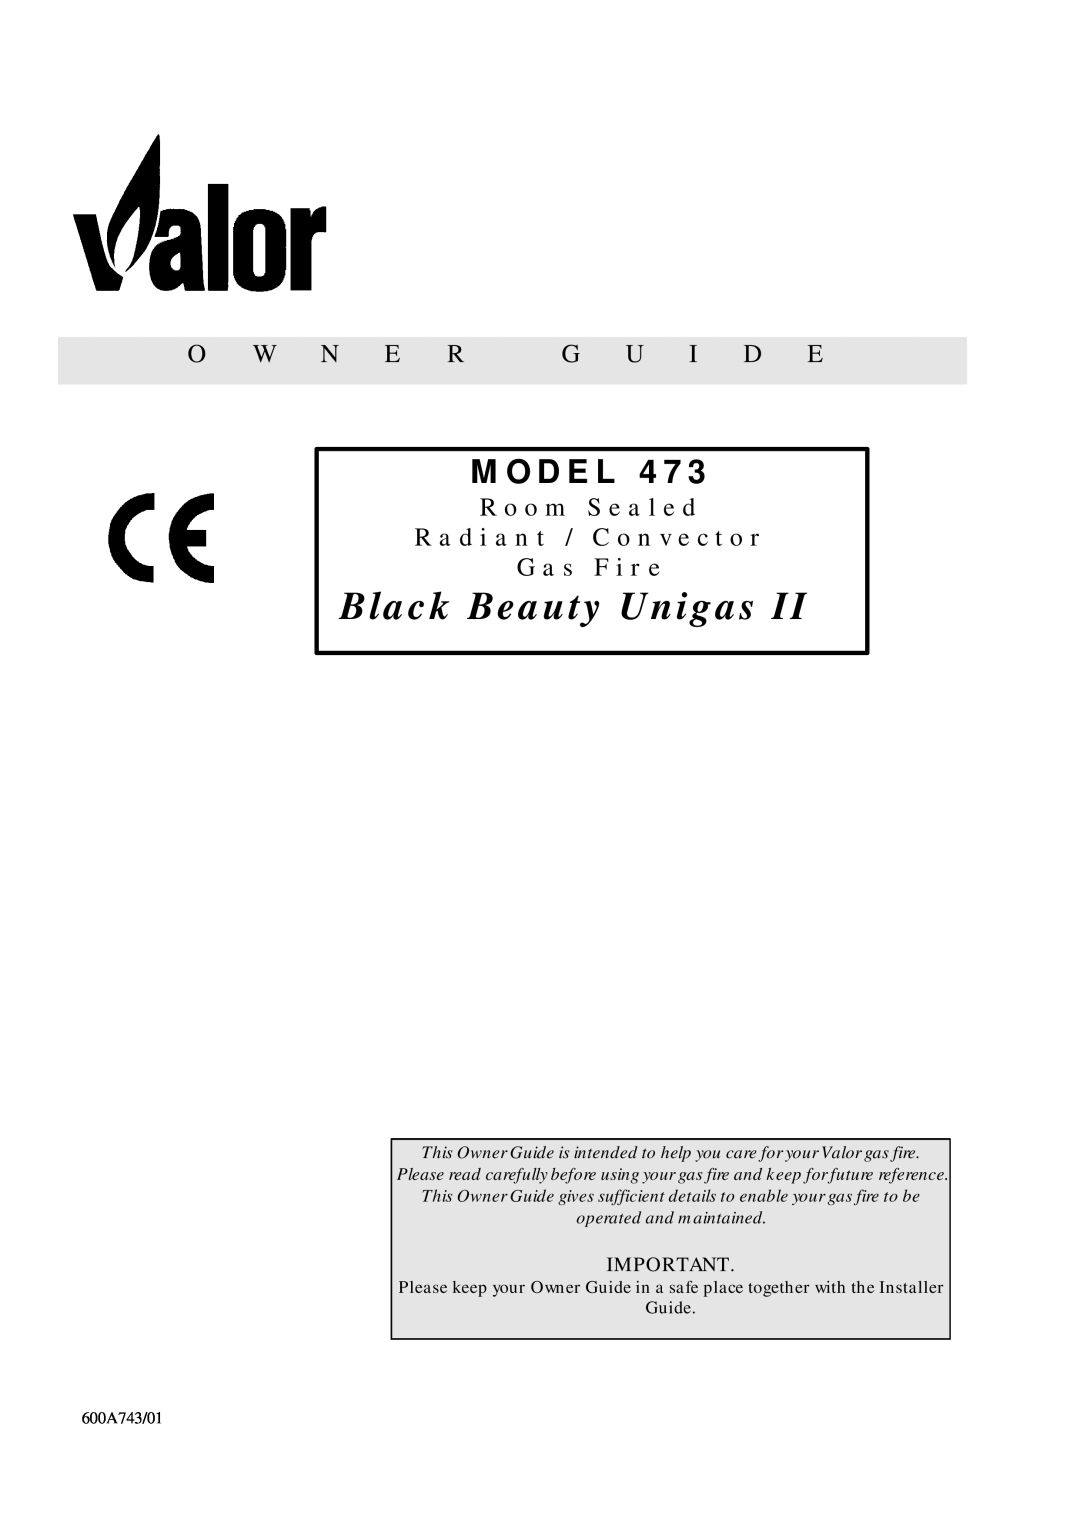 Valor Auto Companion Inc 473 manual O W N E R G U I D E, R o o m S e a l e d, Black Beauty Unigas, M O D E L, Guide 